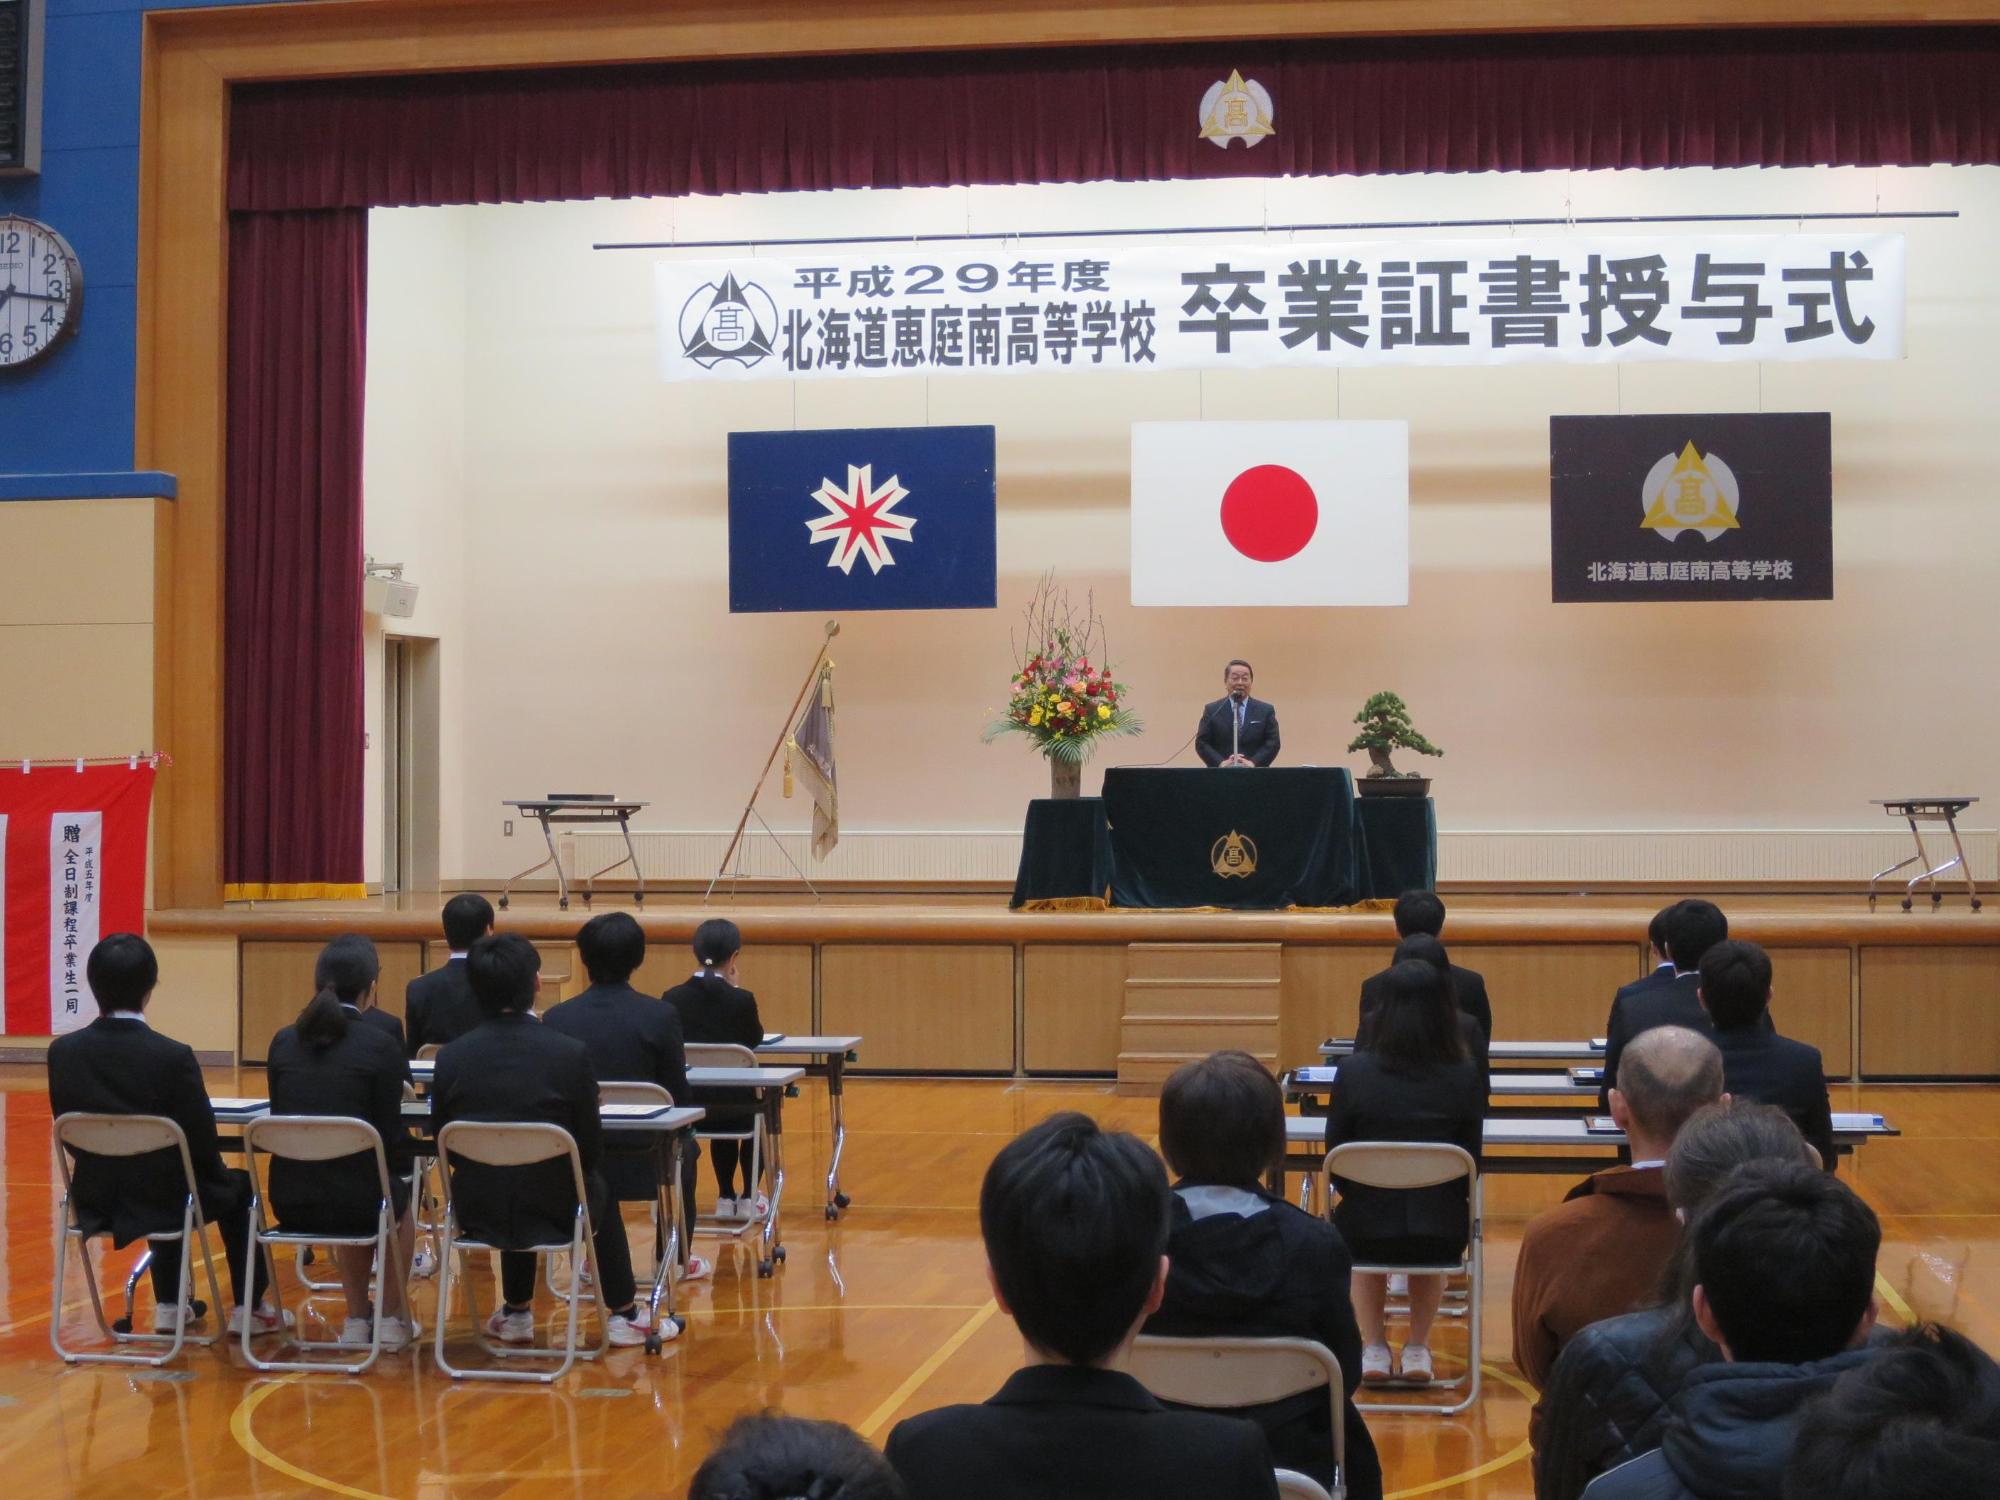 「恵庭南高校定時制課程卒業証書授与式」にて挨拶をしている原田市長の写真